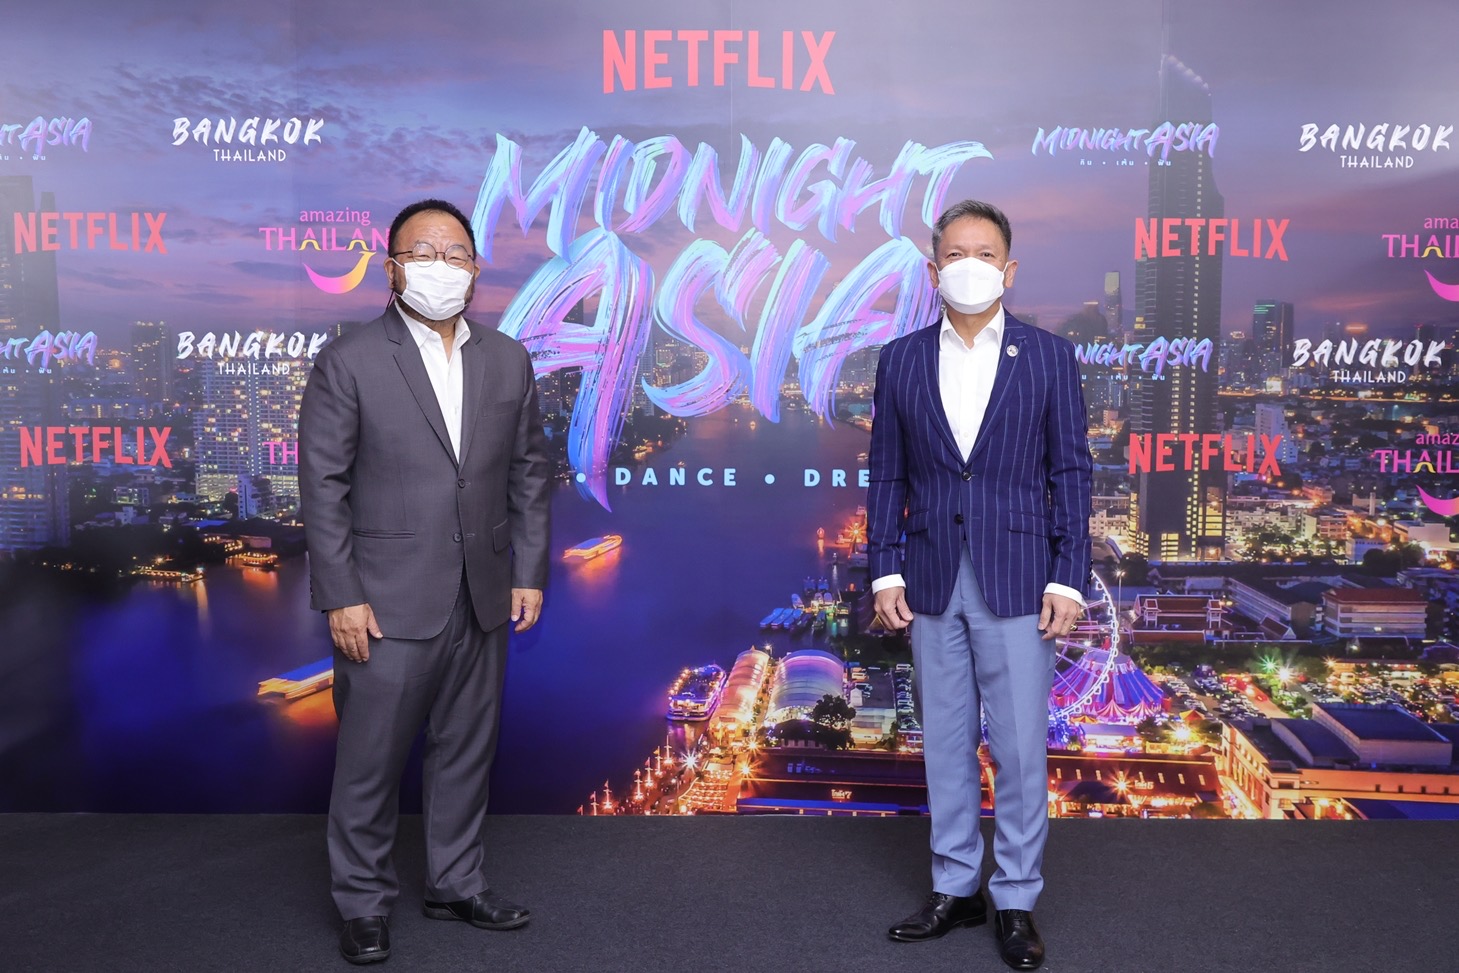 Netflix จับมือการท่องเที่ยวแห่งประเทศไทย โปรโมทการท่องเที่ยวและวัฒนธรรมไทยผ่านภาพยนตร์ ประเดิมด้วยสารคดีเรื่องใหม่ Midnight Asia: กิน เต้น ฝัน รับชมพร้อมกันวันที่ 20 ม.ค นี้